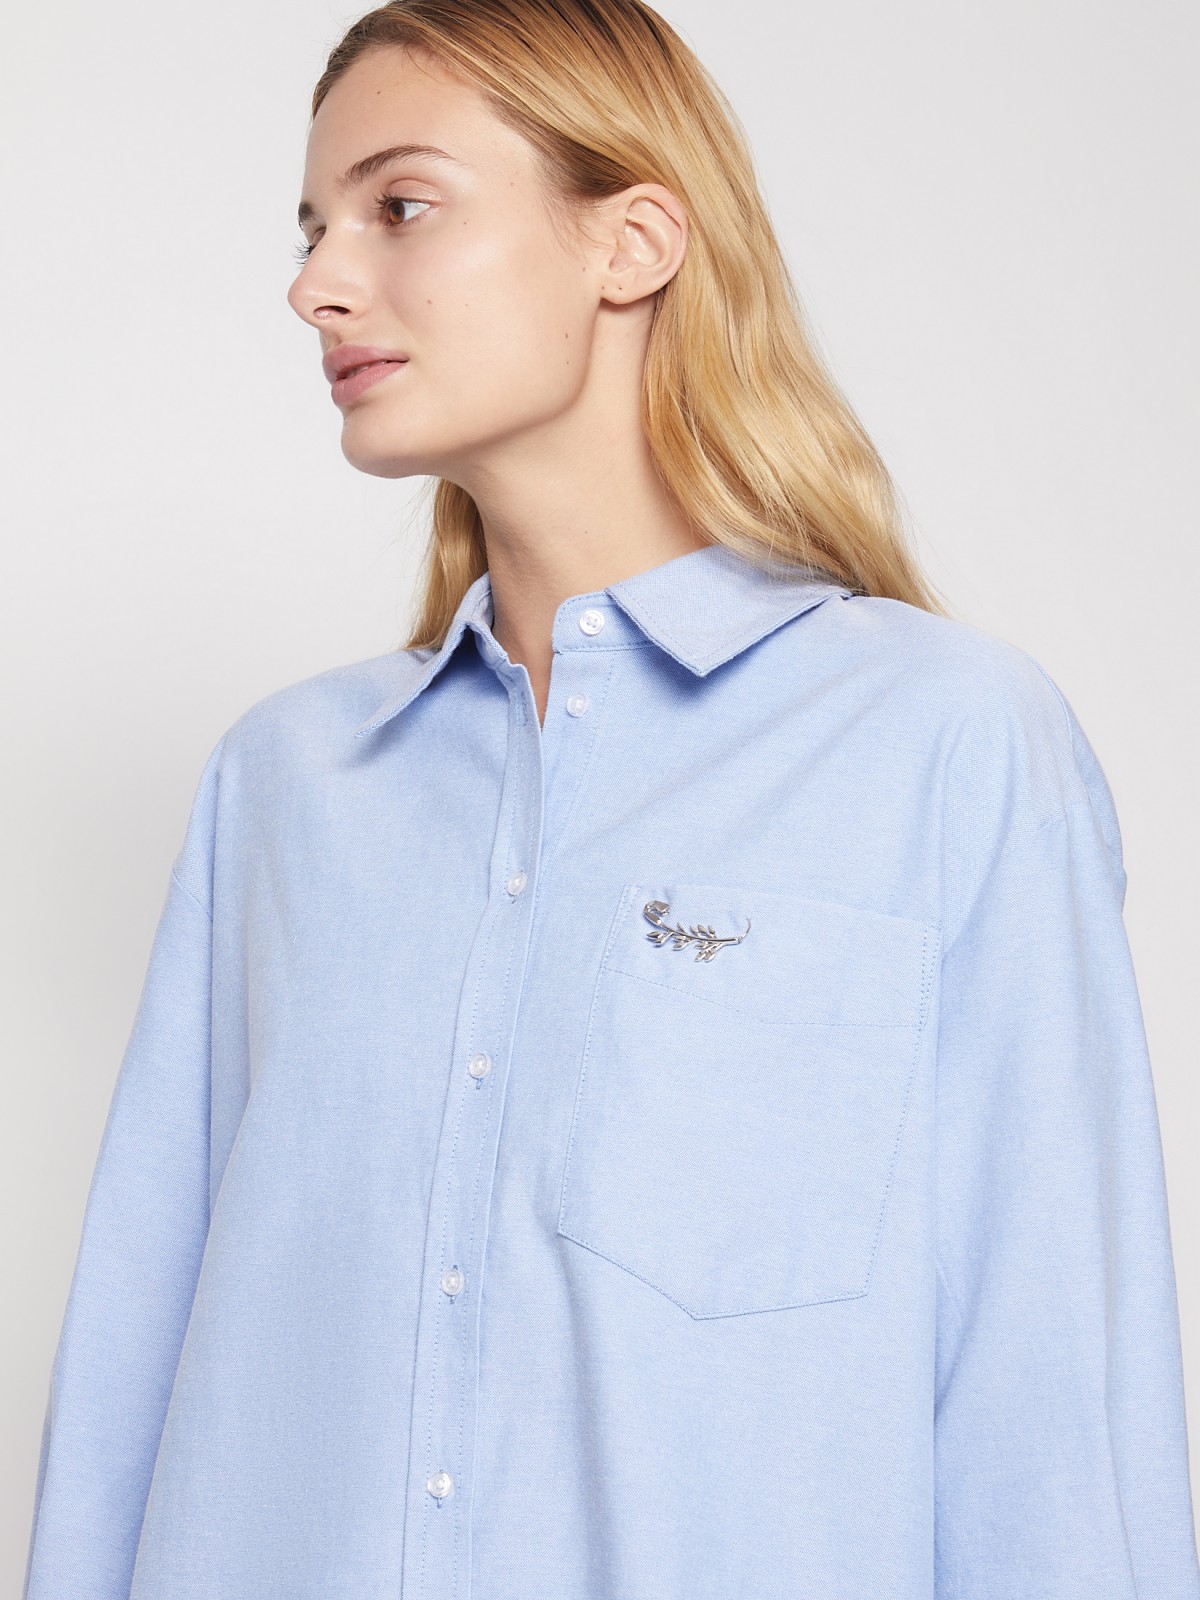 Хлопковая рубашка с брошью zolla 02143114Y011, цвет светло-голубой, размер XS - фото 4